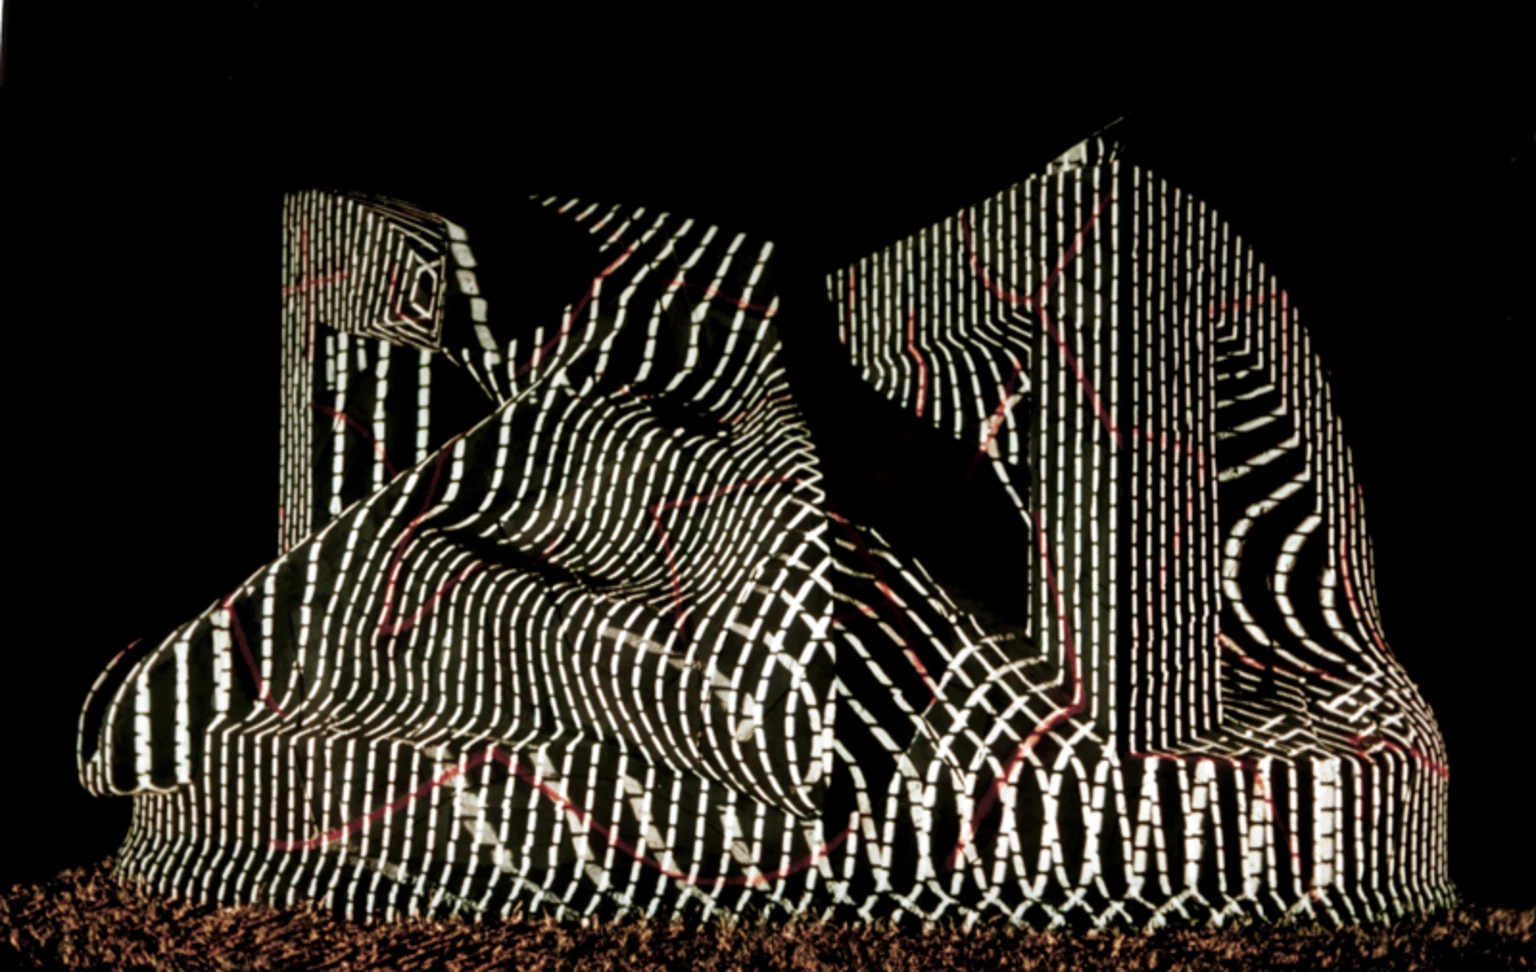 Architektonikus forma (nagy), 1990 - kísérleti megvilágításban